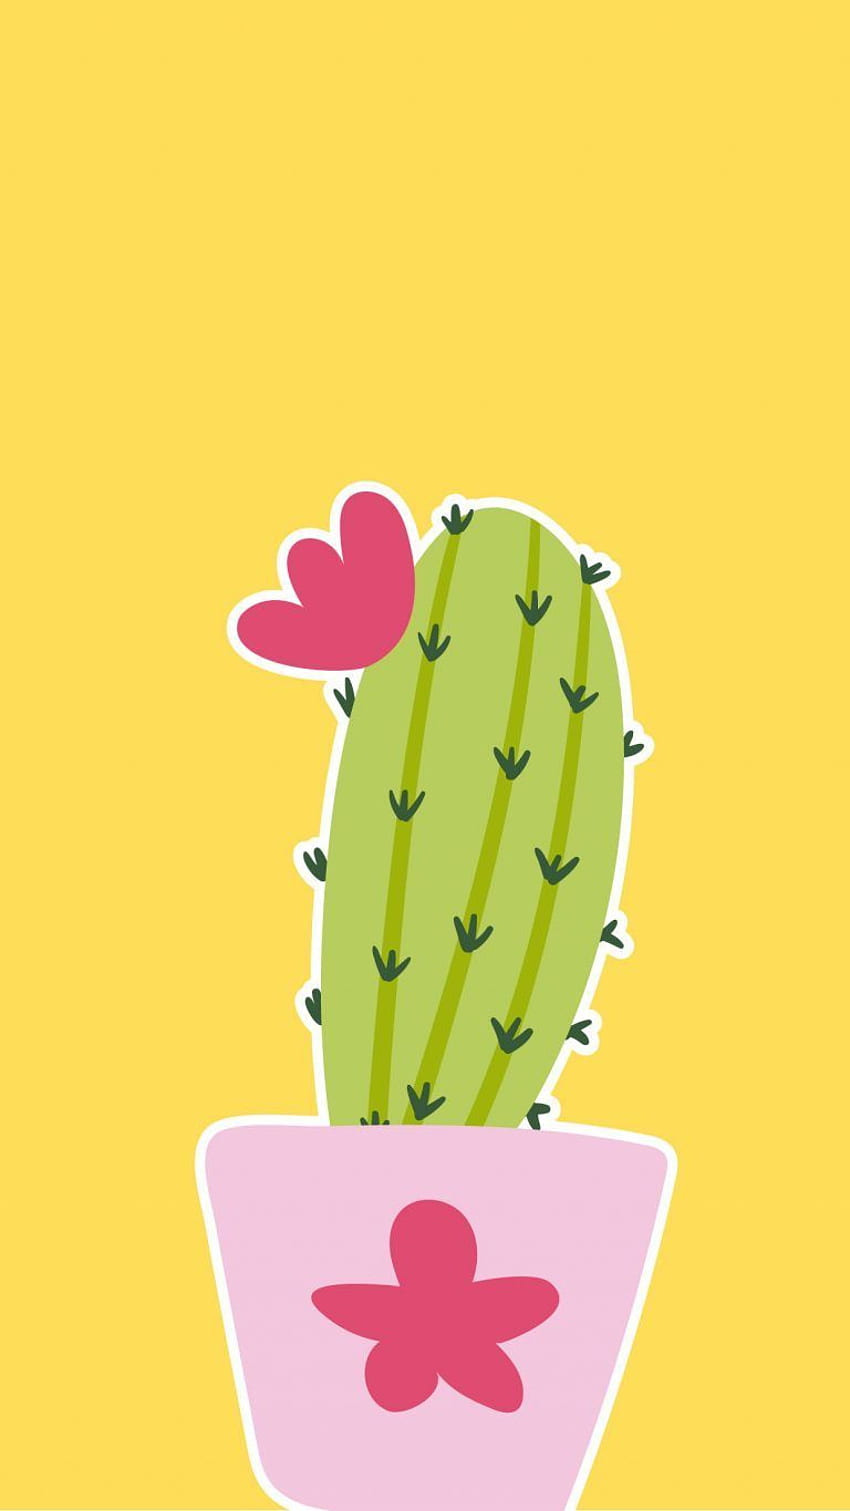 iPhone'a . Kaktus, roślina, opuncja, figa Barbary, żółty kaktus Tapeta na telefon HD